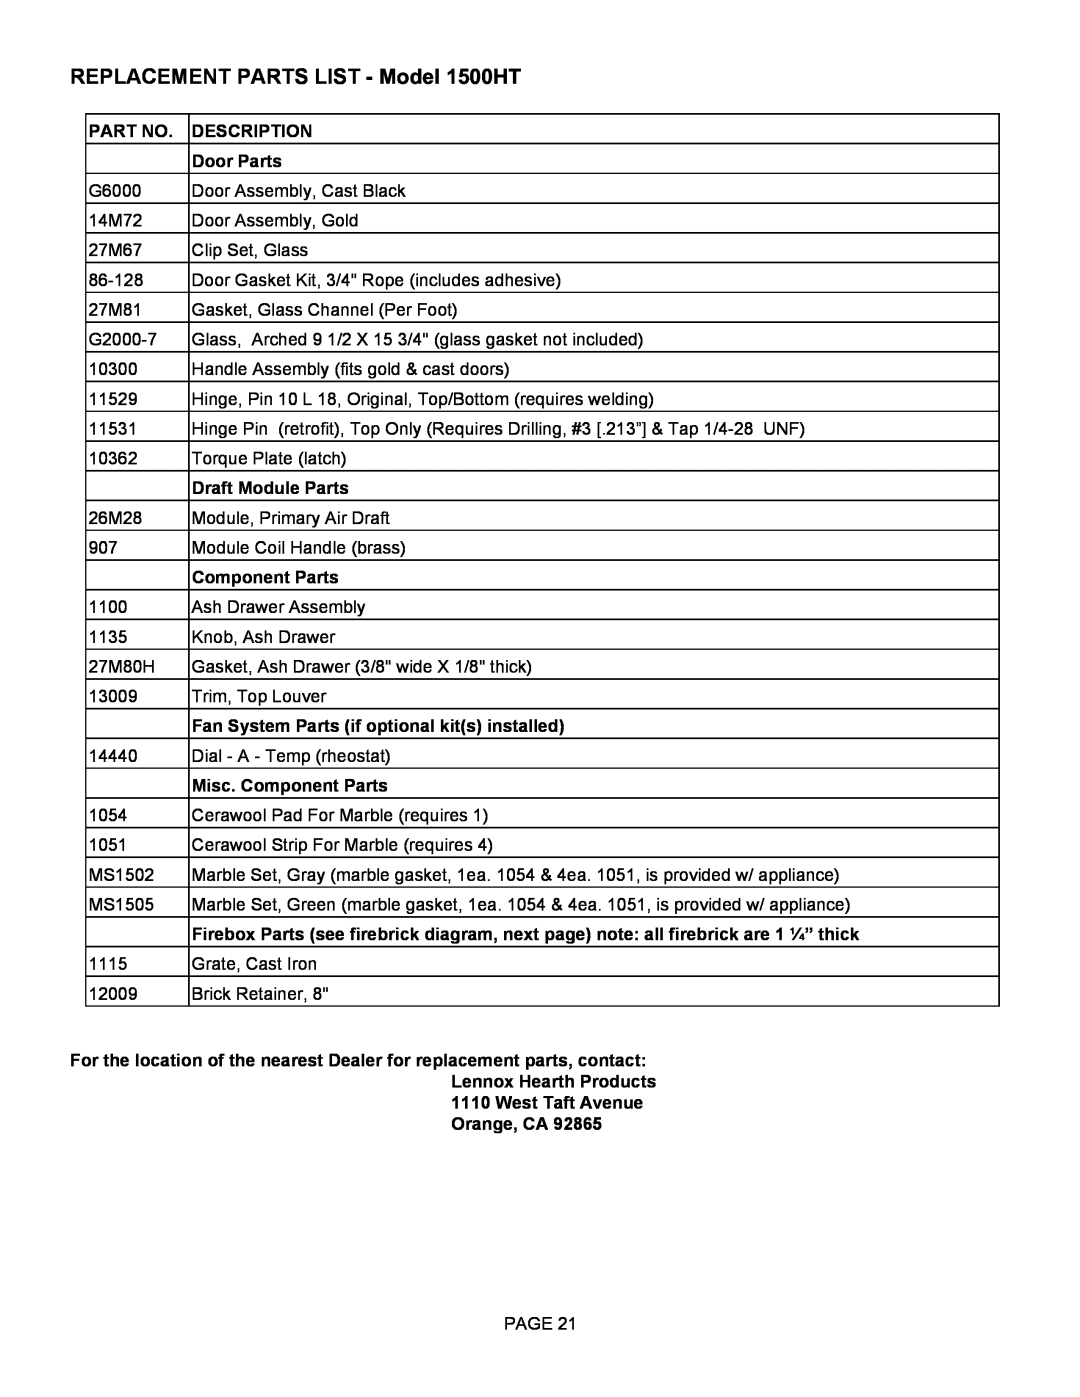 Milwaukee REPLACEMENT PARTS LIST - Model 1500HT, Description, Door Parts, Draft Module Parts, Component Parts 